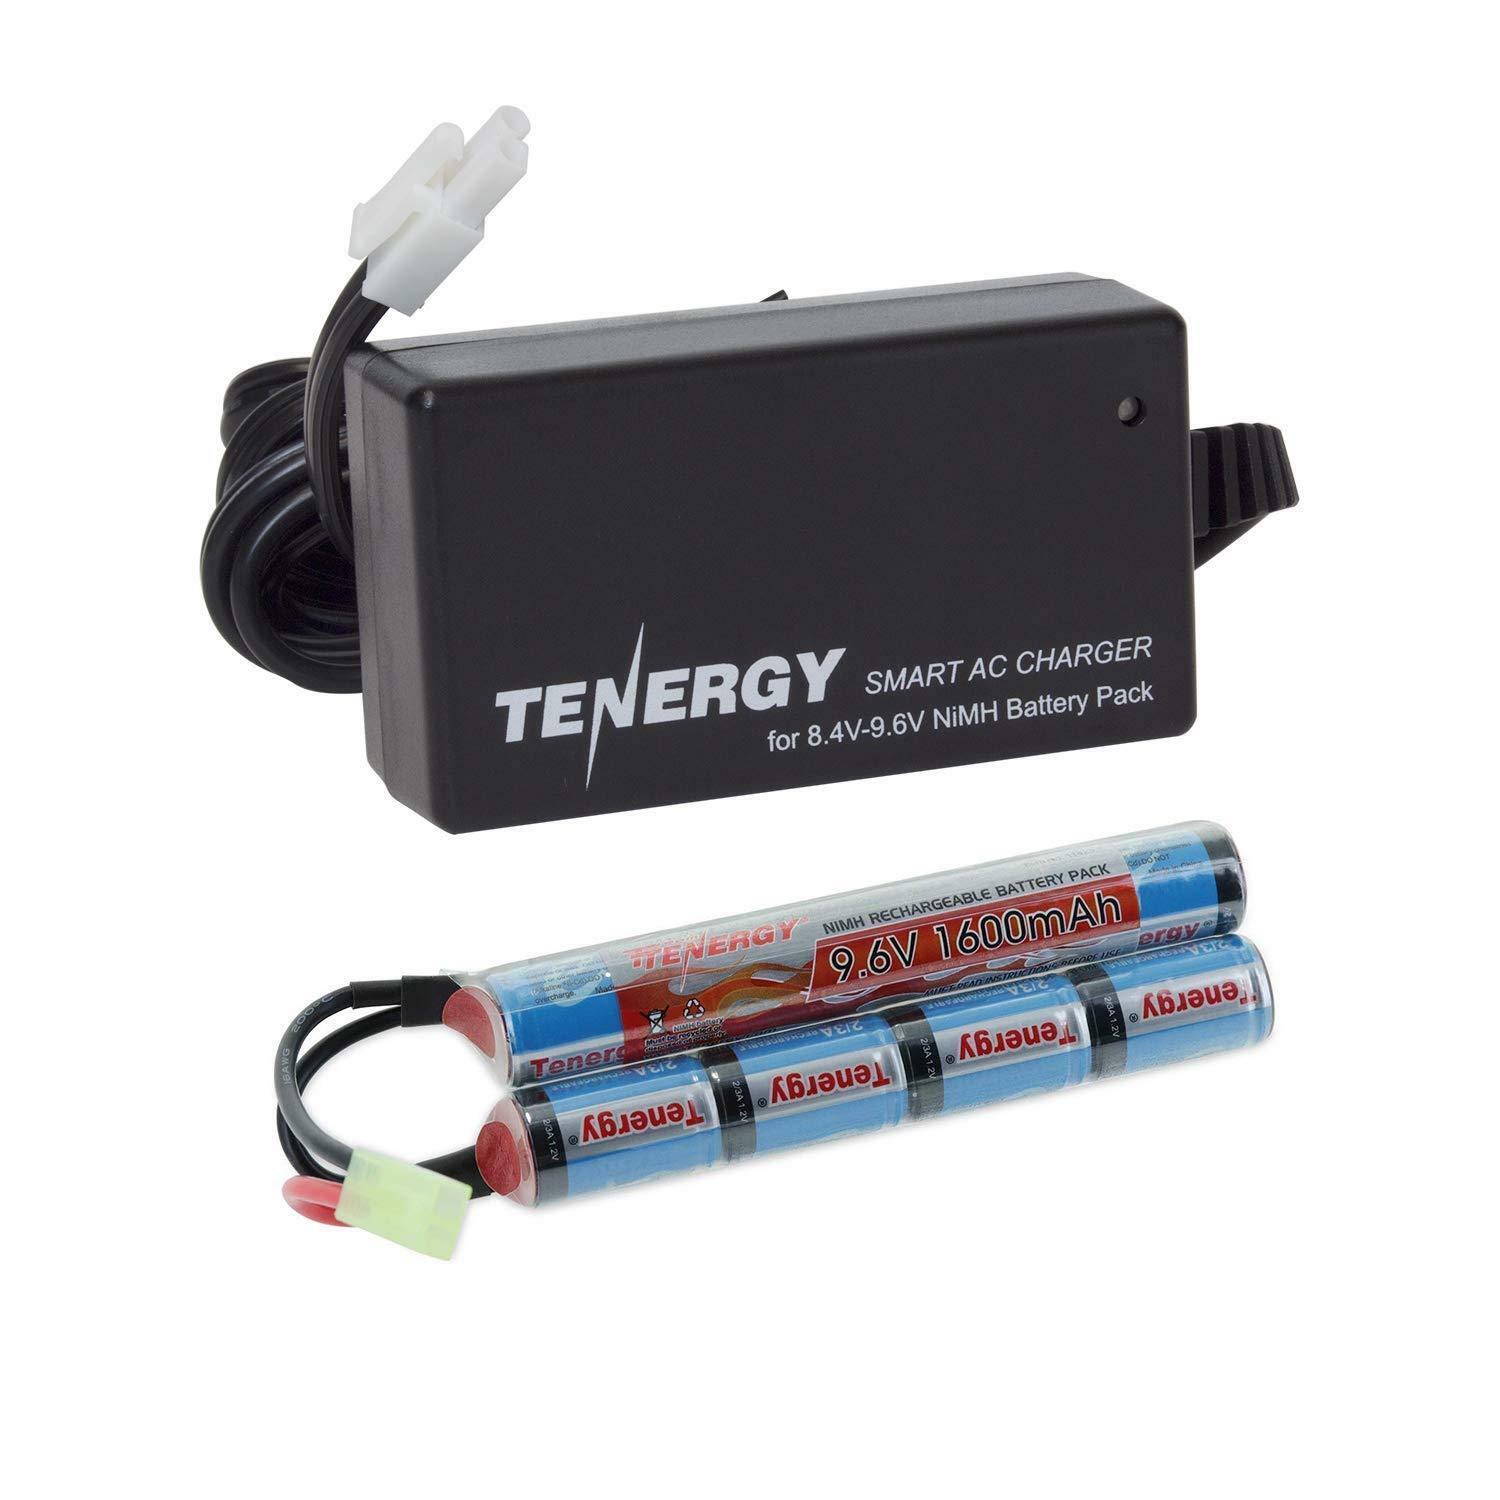 Tenergy 9.6v 1600mah Nimh Airsoft Battery Pack/8.4v-9.6v Smart Charger Option